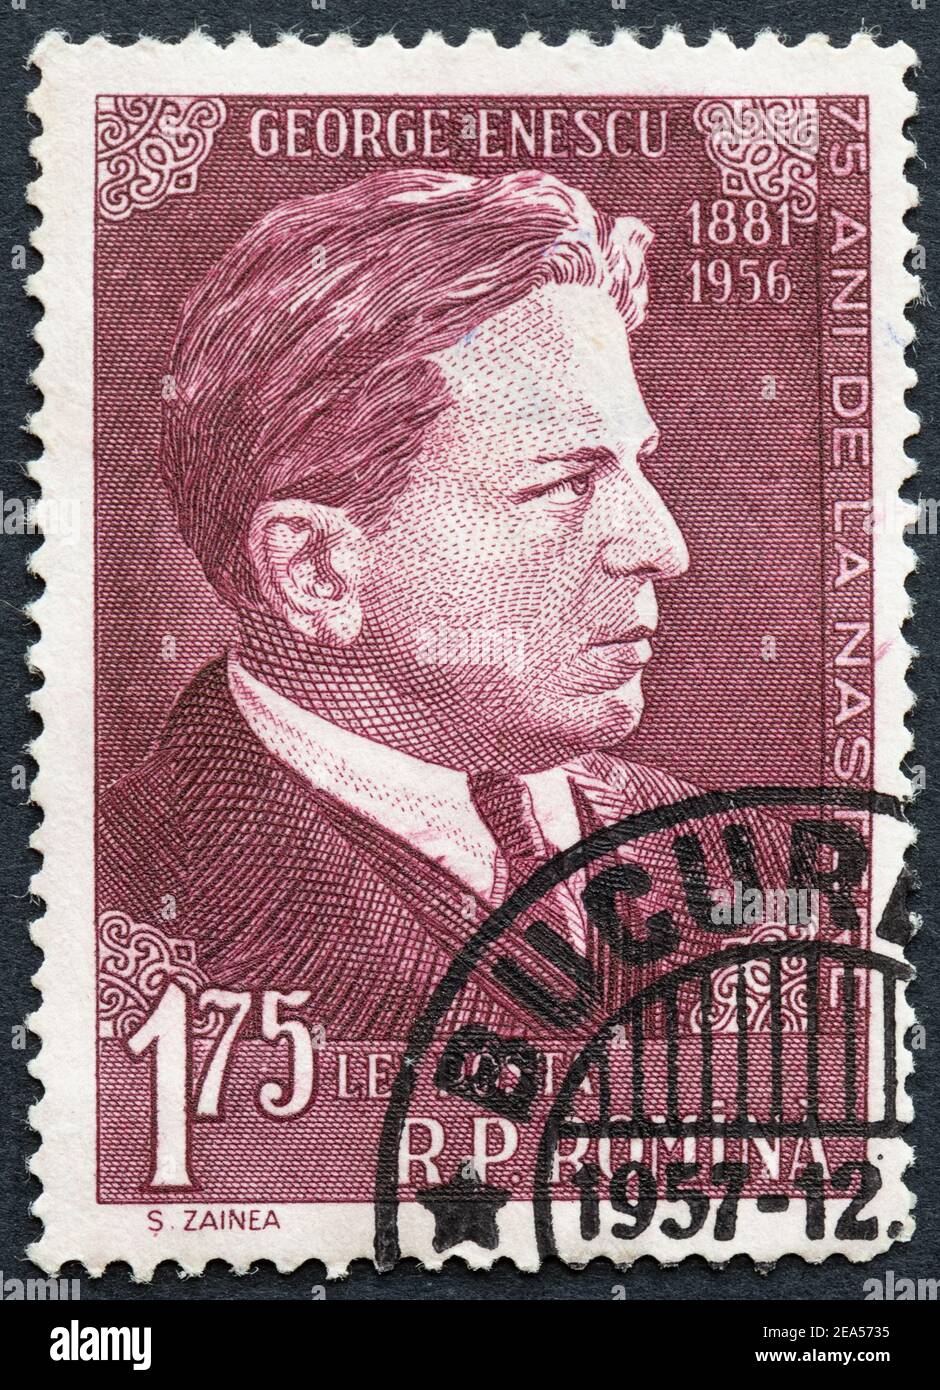 George Enescu Rumänischer Musiker - Rumänische 175 Lei Briefmarke Stockfoto